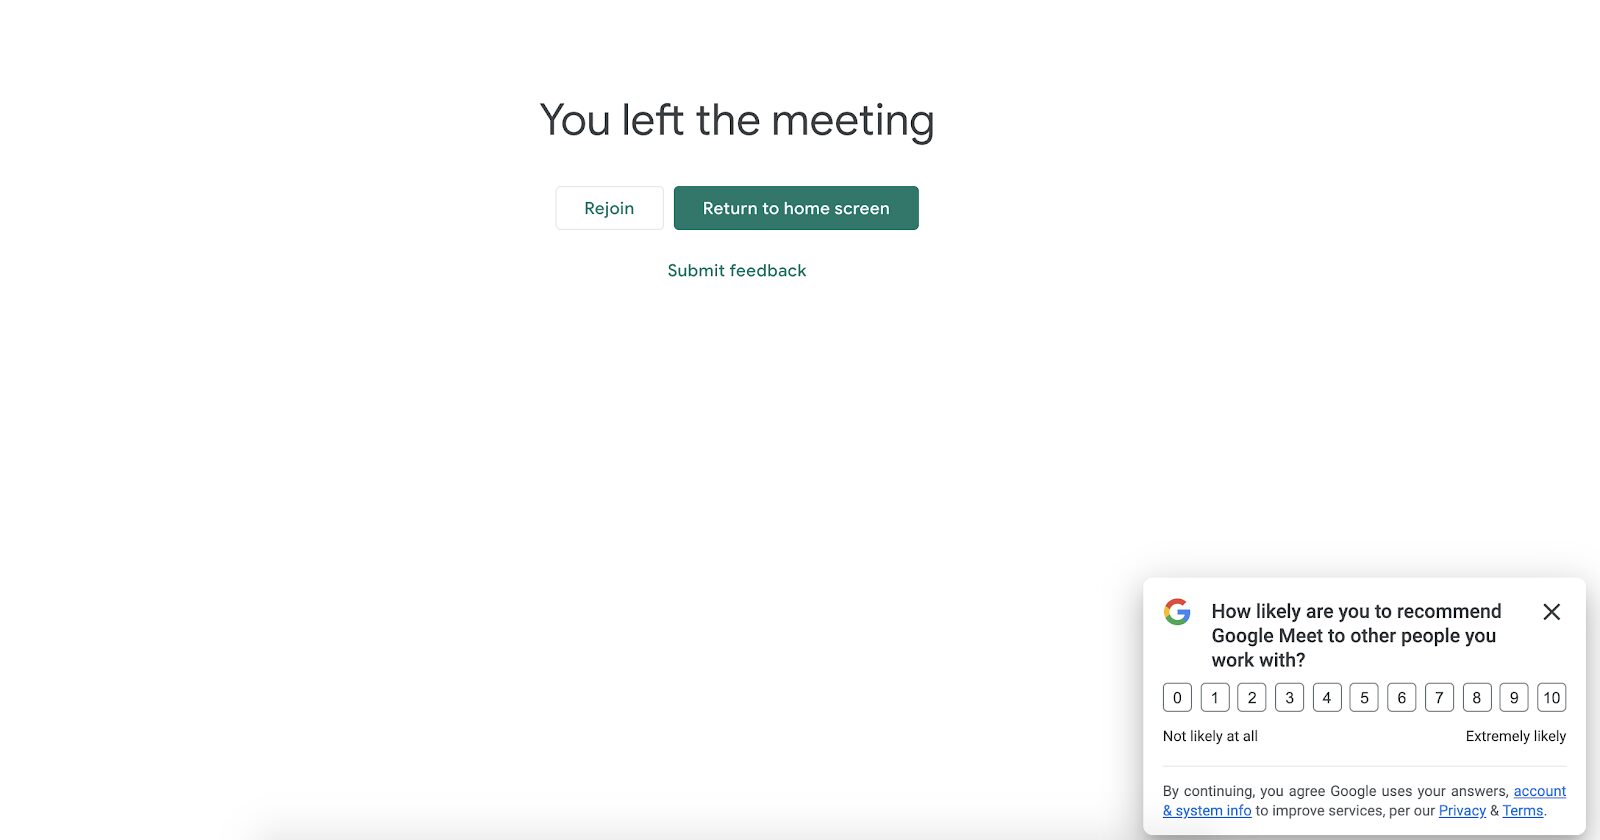 L'enquête NPS de Google Meet apparaît une fois que le visiteur termine un appel, afin qu'il puisse immédiatement fournir des commentaires sur son expérience. C'est une excellente tactique pour encourager les utilisateurs à partager leurs commentaires alors qu'ils sont encore récents.